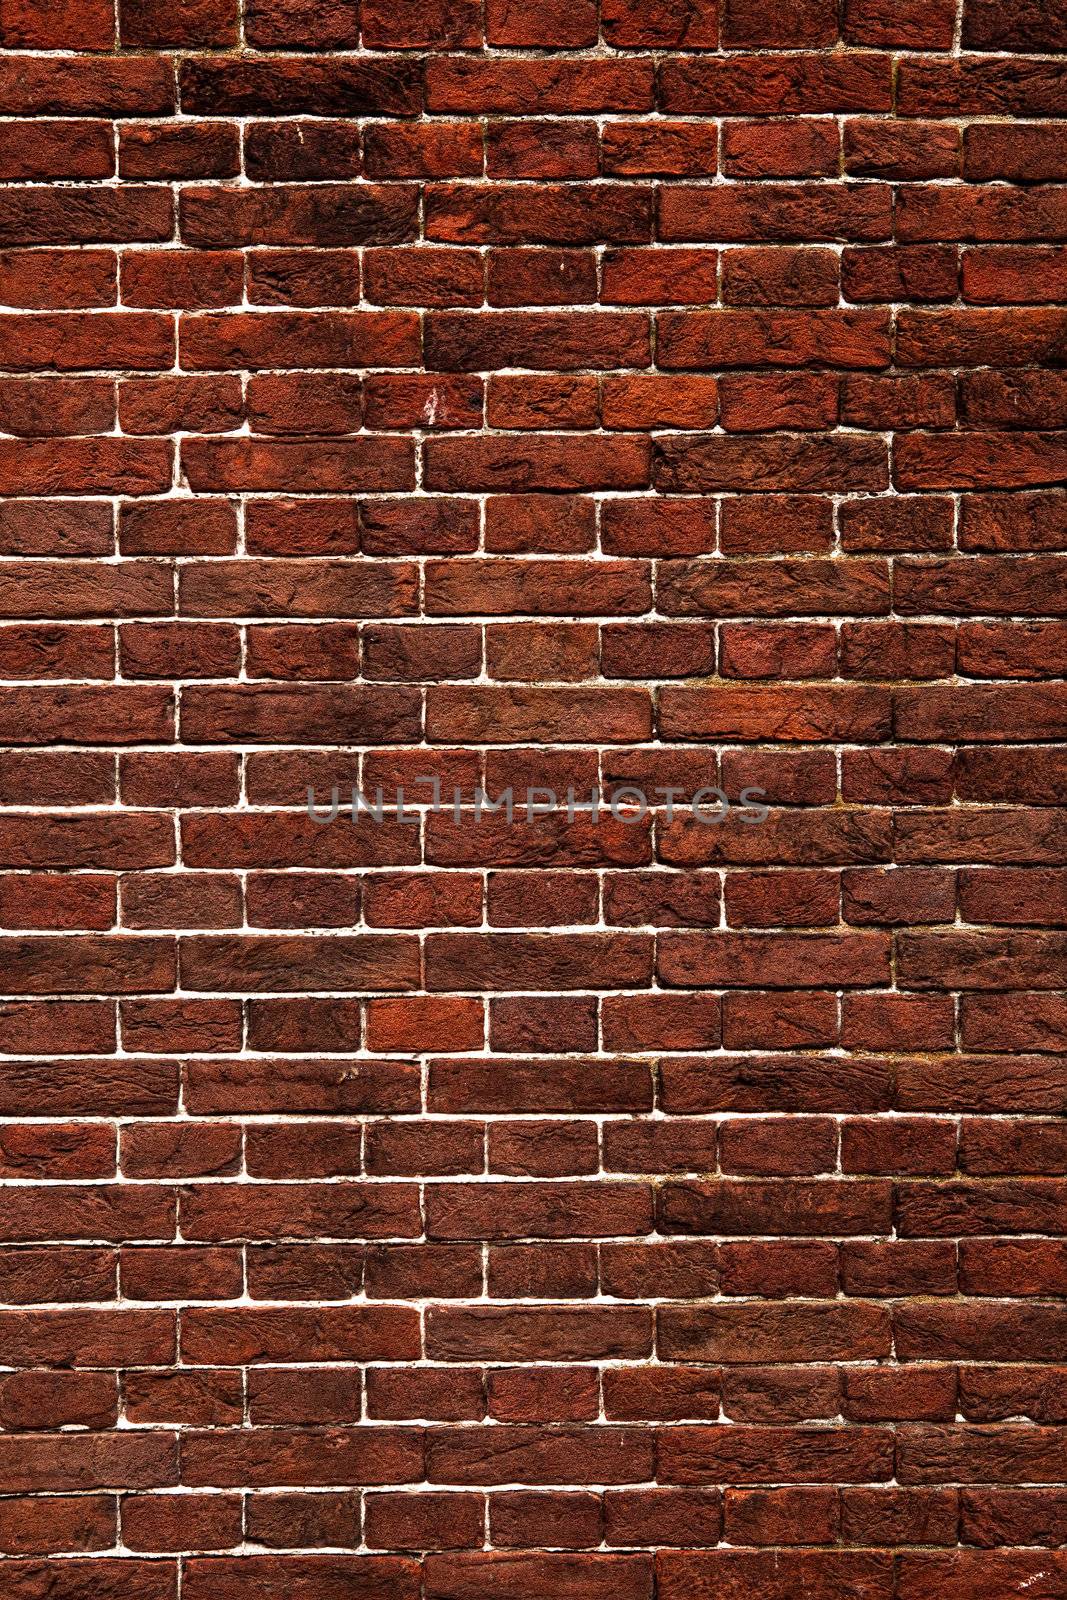 Brick wall by Iko